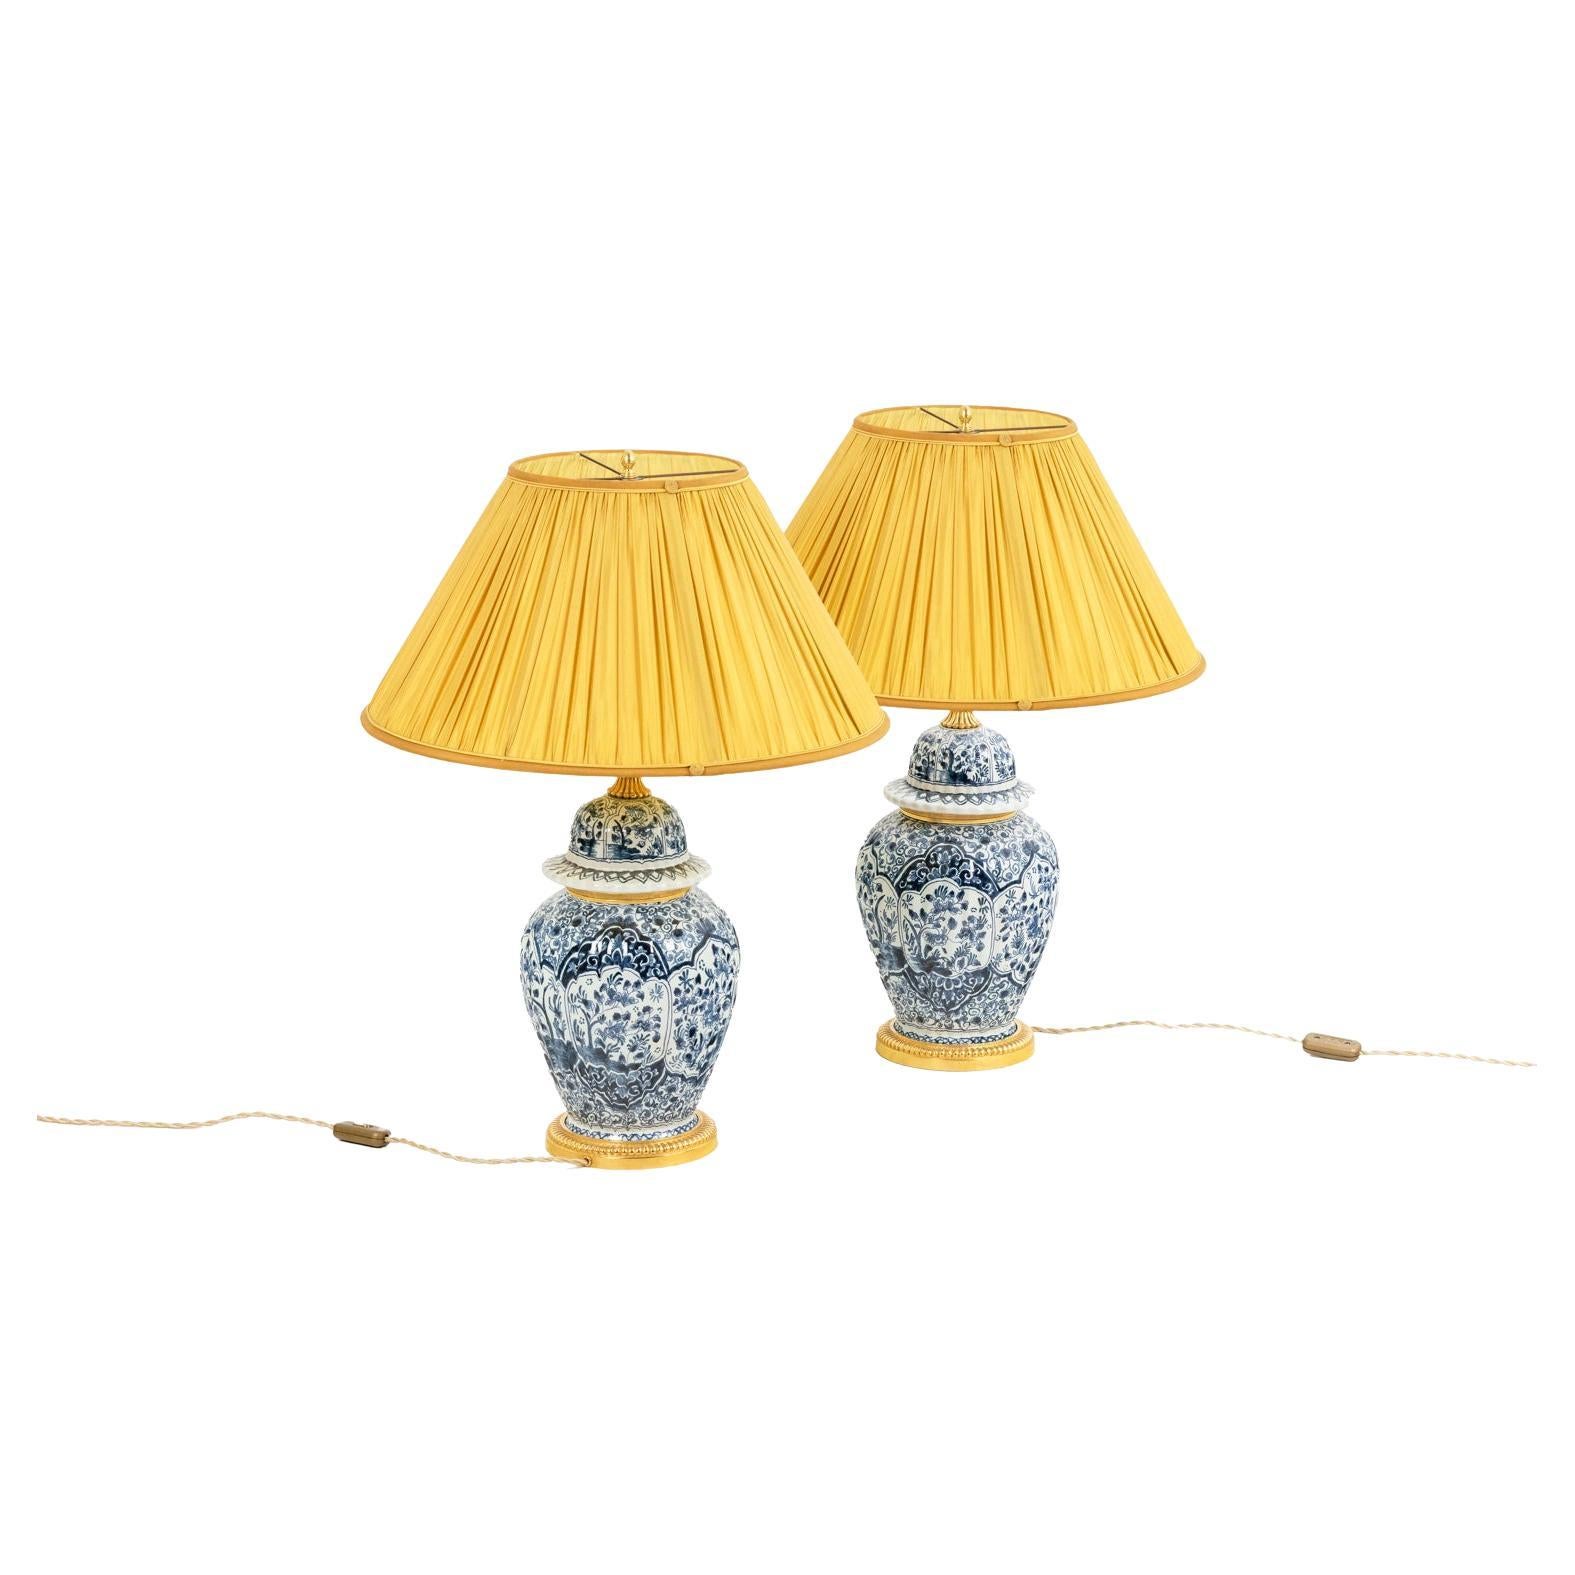 Paar Lampen aus Steingut und Bronze, 19. Jahrhundert, gelber Lampenschirm